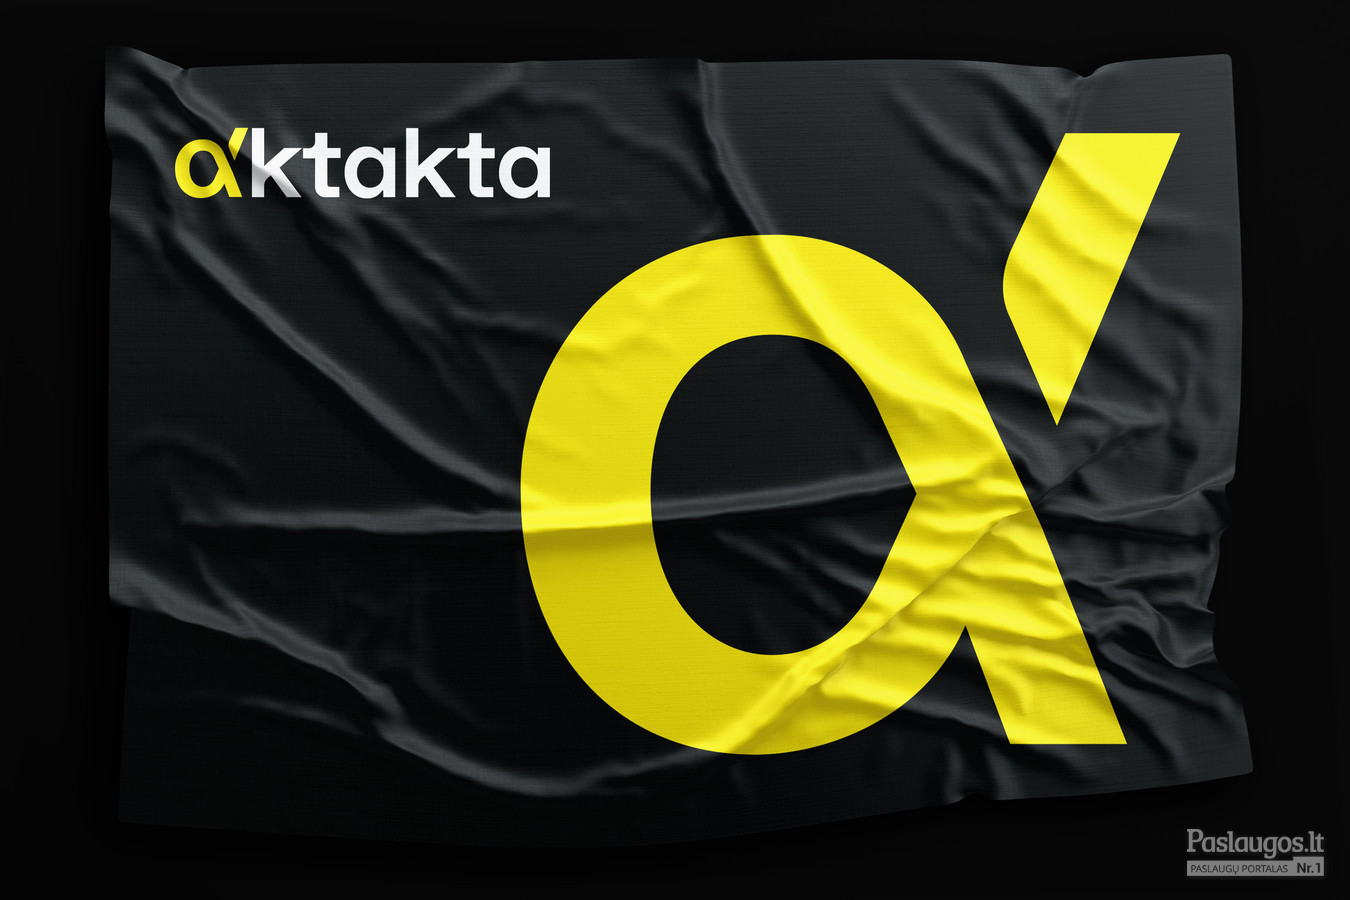 Aktakta - Ultragariniai jutikliai / Logotipas, firminis stilius, svetainės sukūrimas / Kostas Vasarevicius - kostazzz@gmail.com